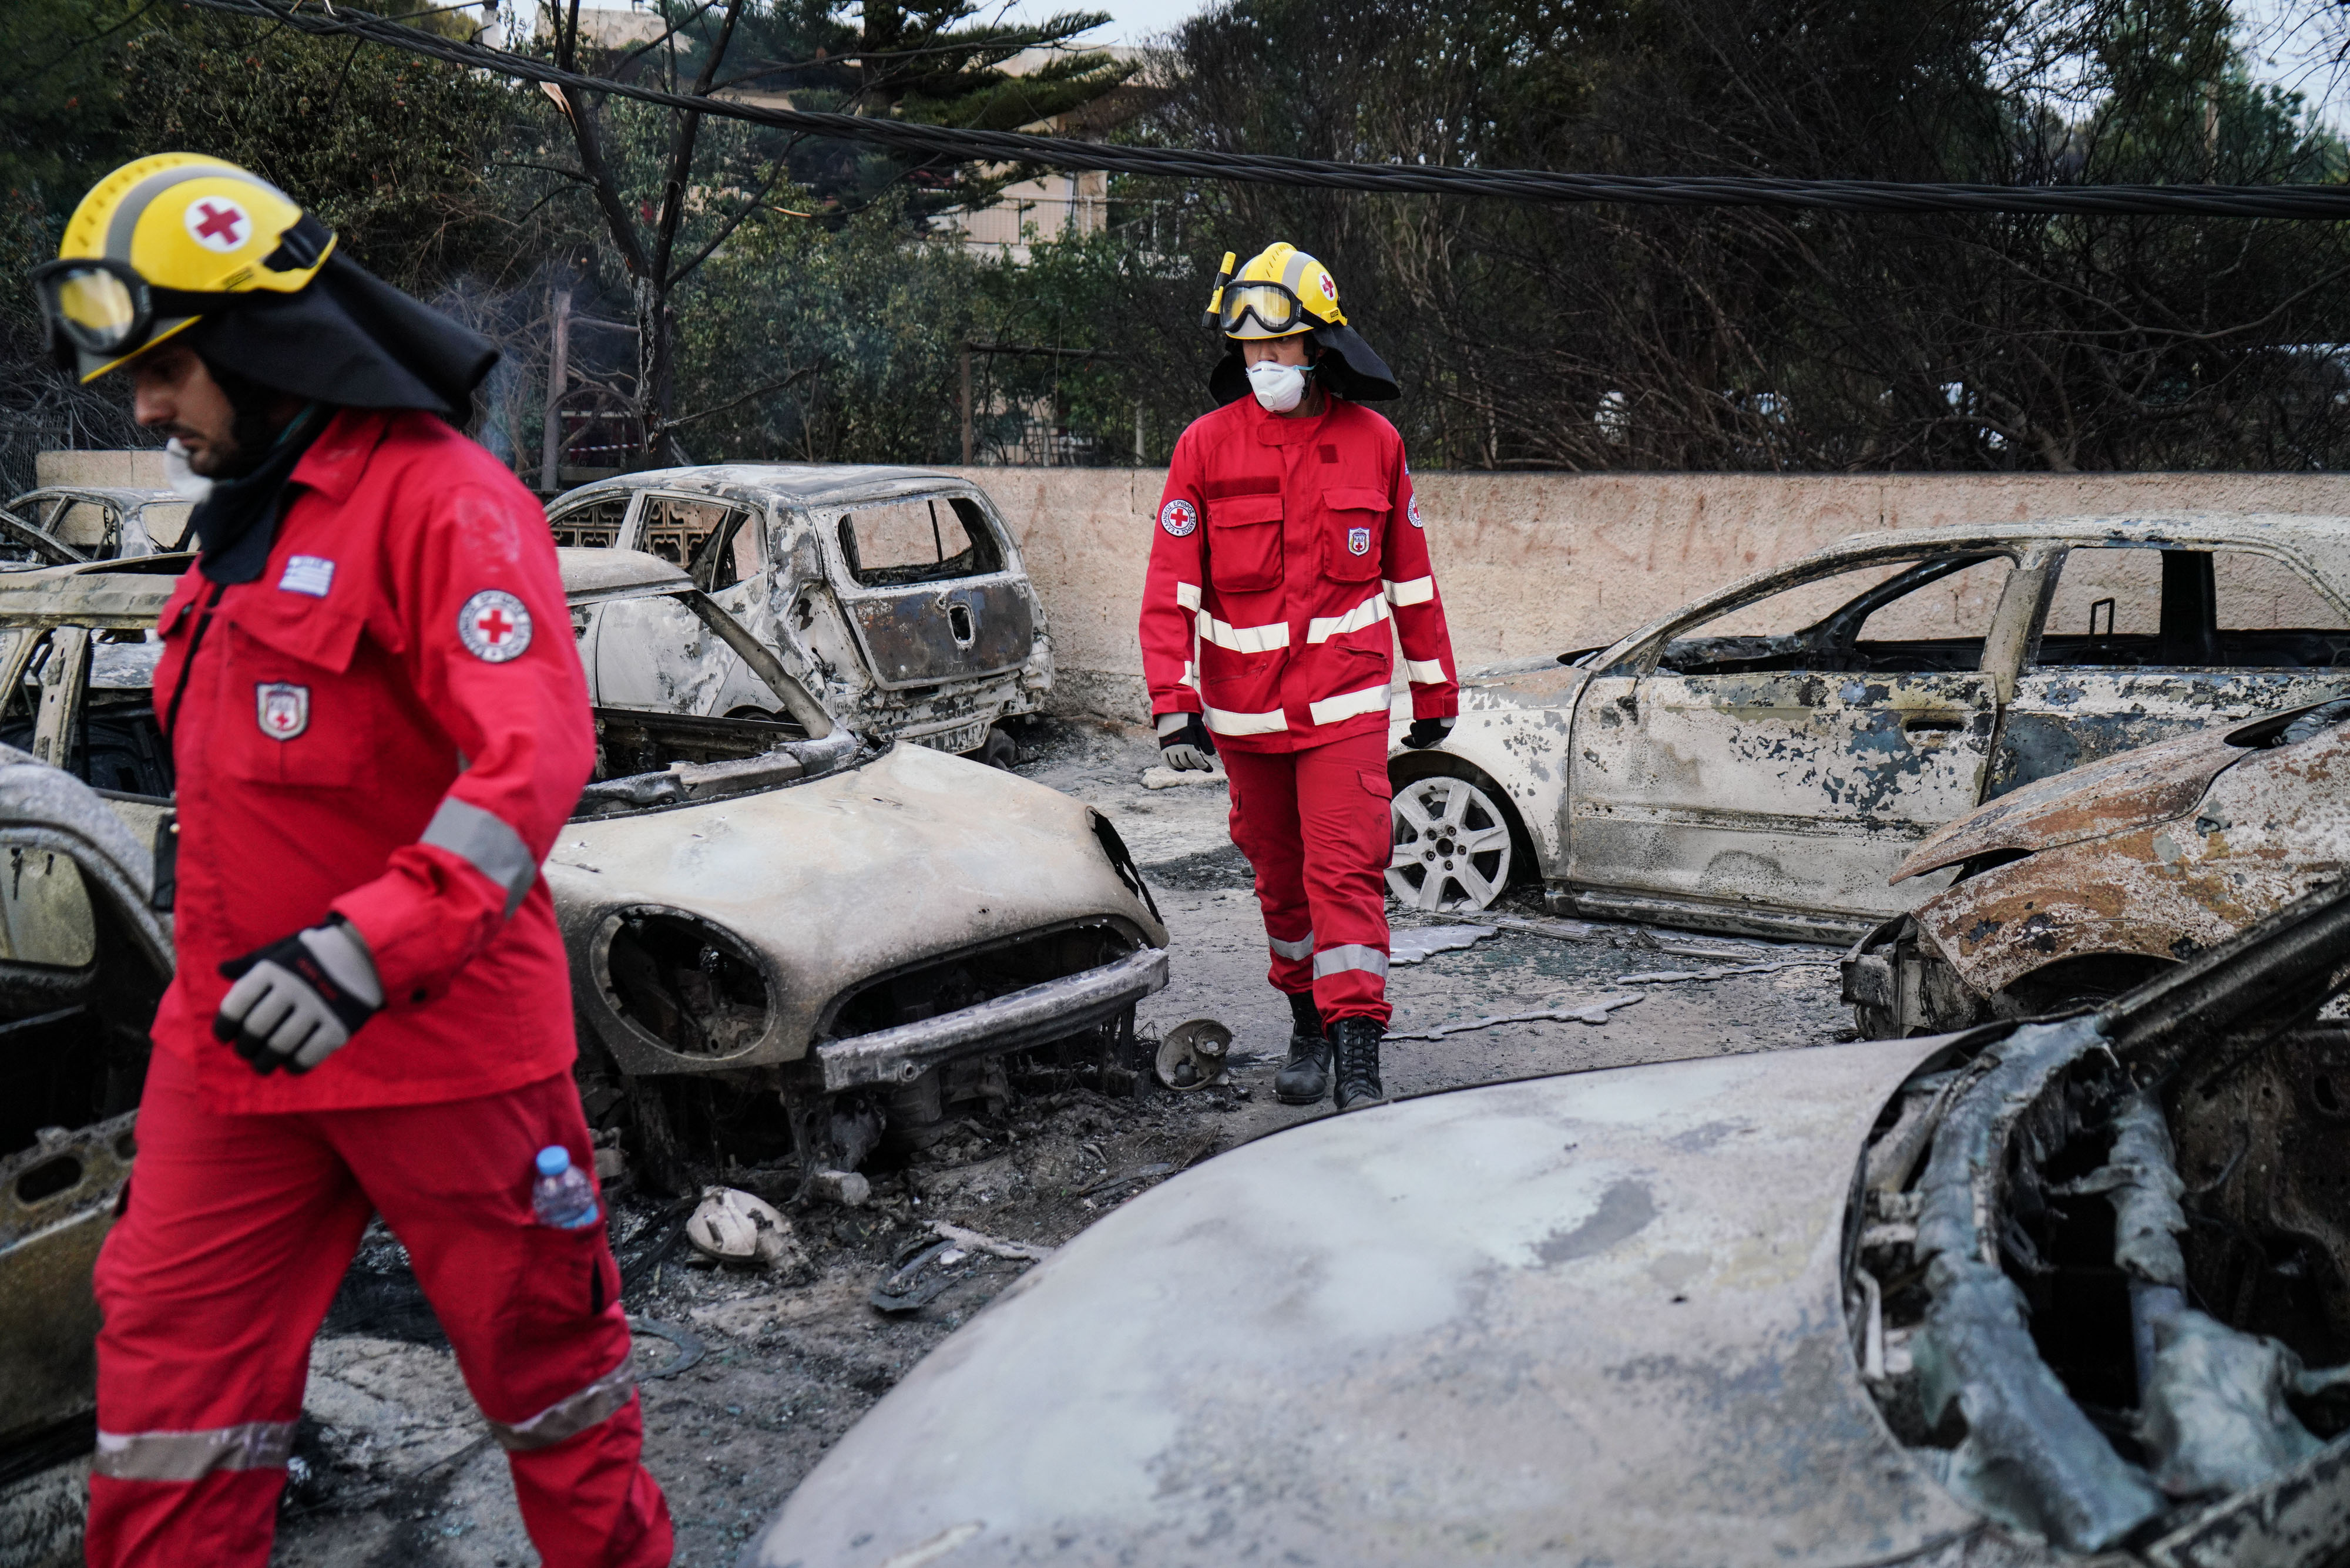 Mindent felemésztett a tűzvész a görög üdülőtelepen